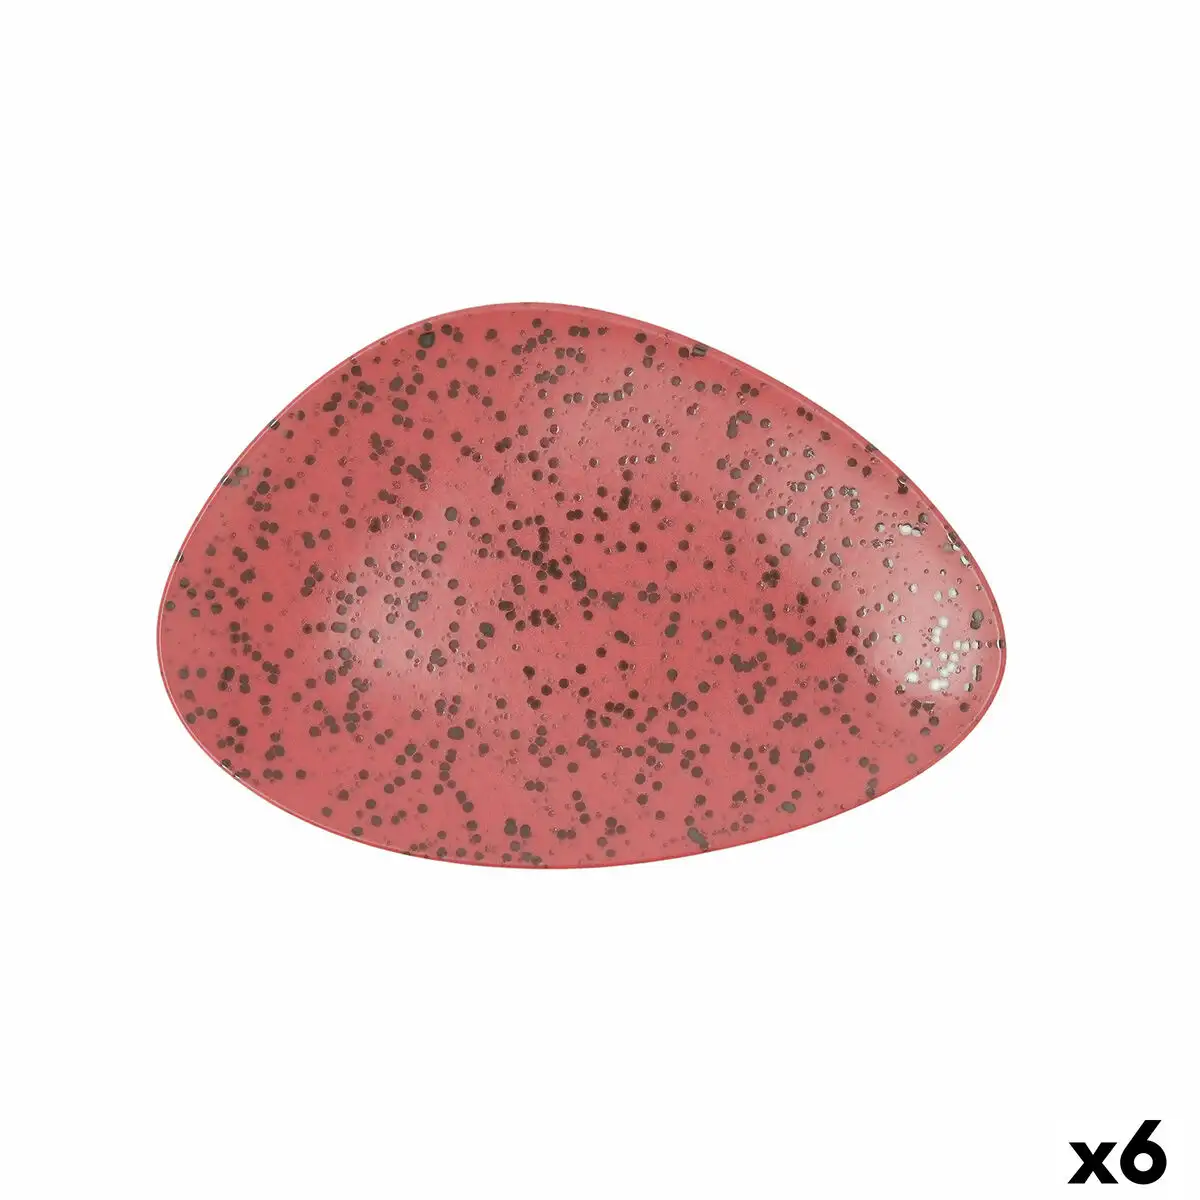 Assiette plate ariane oxide triangulaire ceramique rouge o 29 cm 6 unites _5051. DIAYTAR SENEGAL - Là où Vos Rêves Prendent Forme. Plongez dans notre catalogue diversifié et trouvez des produits qui enrichiront votre quotidien, du pratique à l'exceptionnel.